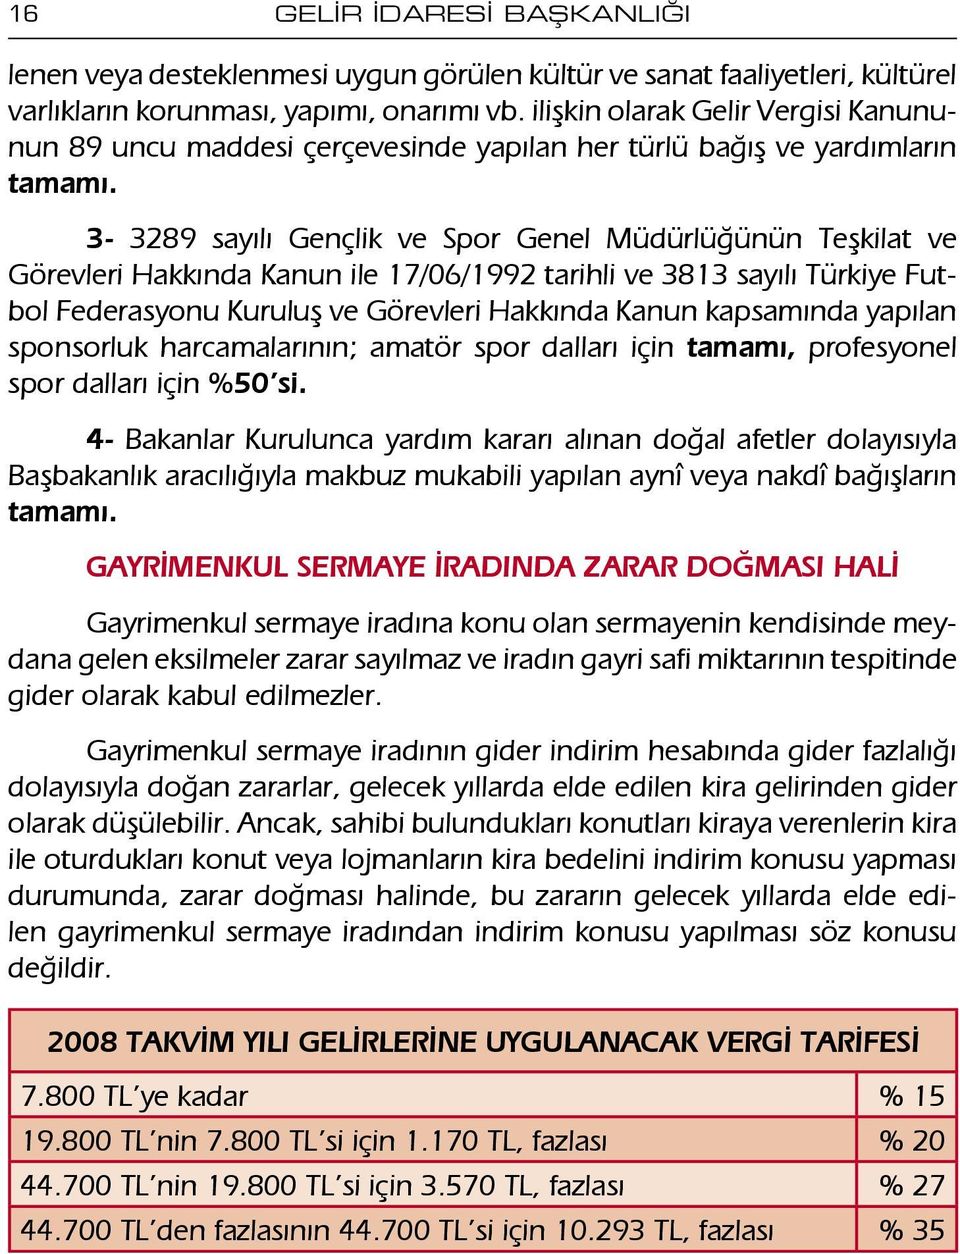 3-3289 sayılı Gençlik ve Spor Genel Müdürlüğünün Teşkilat ve Görevleri Hakkında Kanun ile 17/06/1992 tarihli ve 3813 sayılı Türkiye Futbol Federasyonu Kuruluş ve Görevleri Hakkında Kanun kapsamında